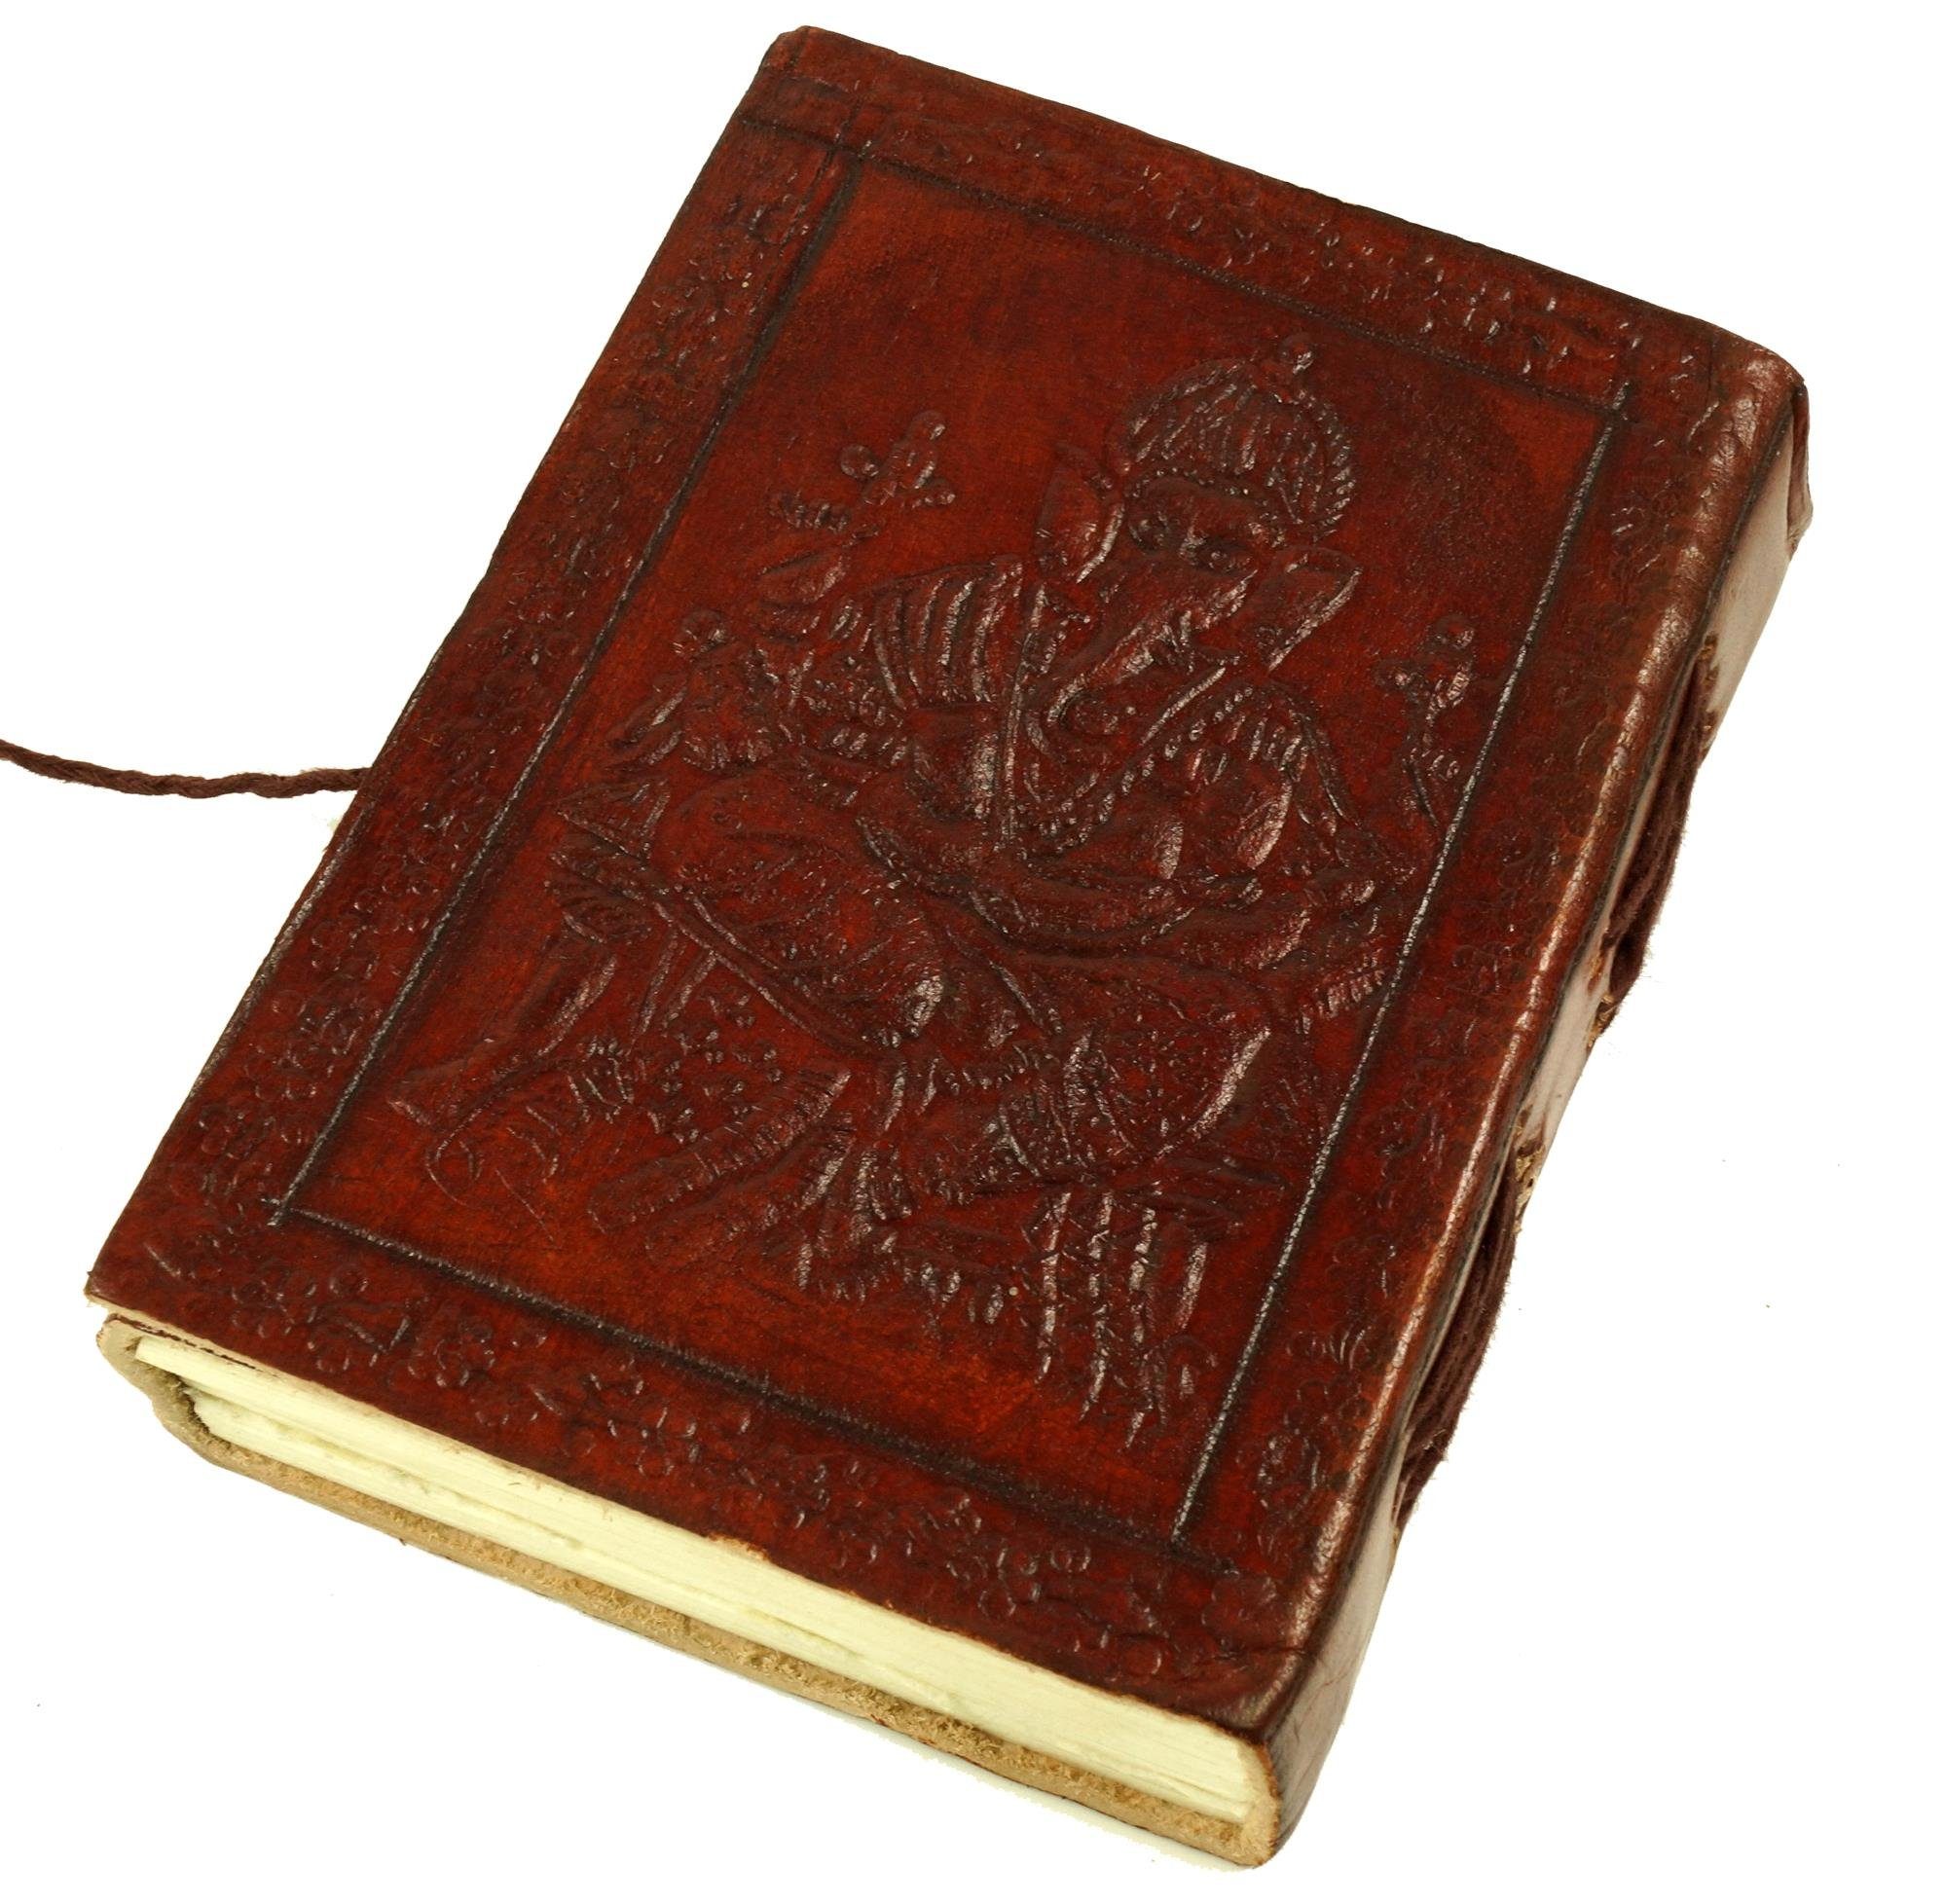 9*12 cm Tagebuch Guru-Shop Lederbuch, Notizbuch, Ganesh mit Tagebuch Ledereinband..